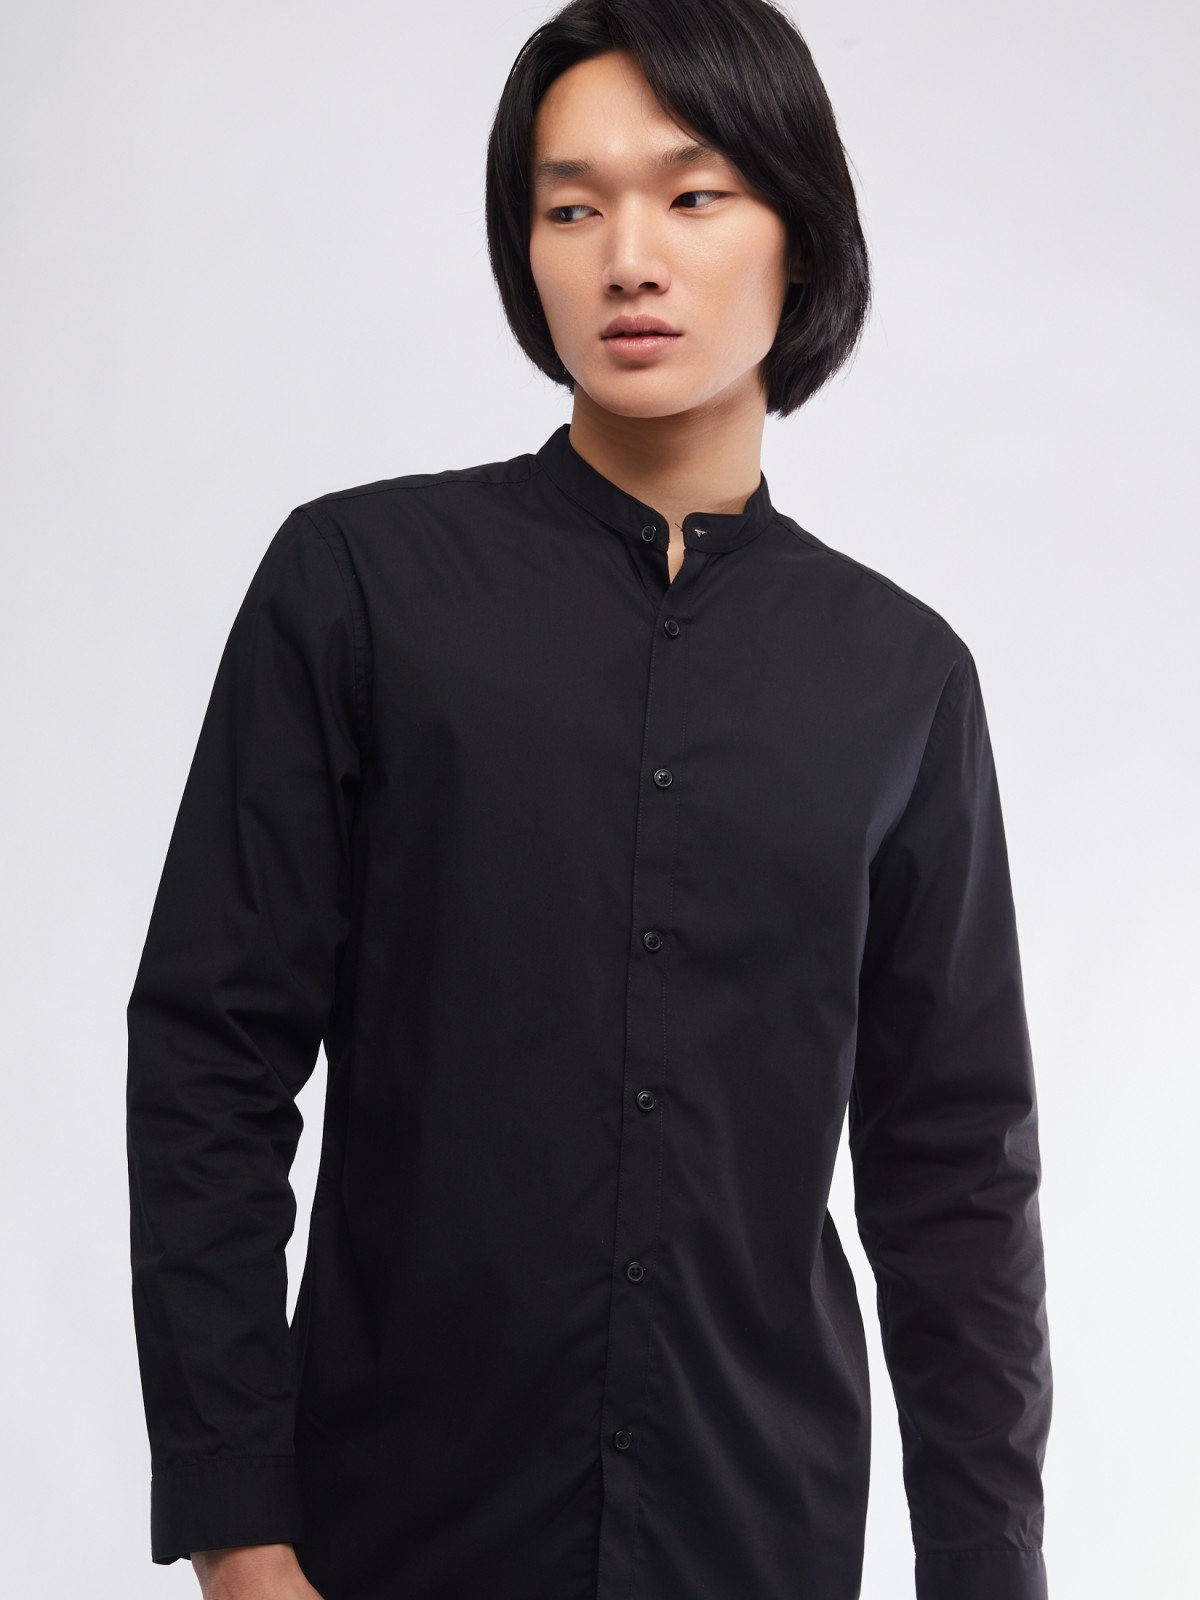 Офисная рубашка с воротником-стойкой и длинным рукавом zolla 01411217W072, цвет черный, размер S - фото 4